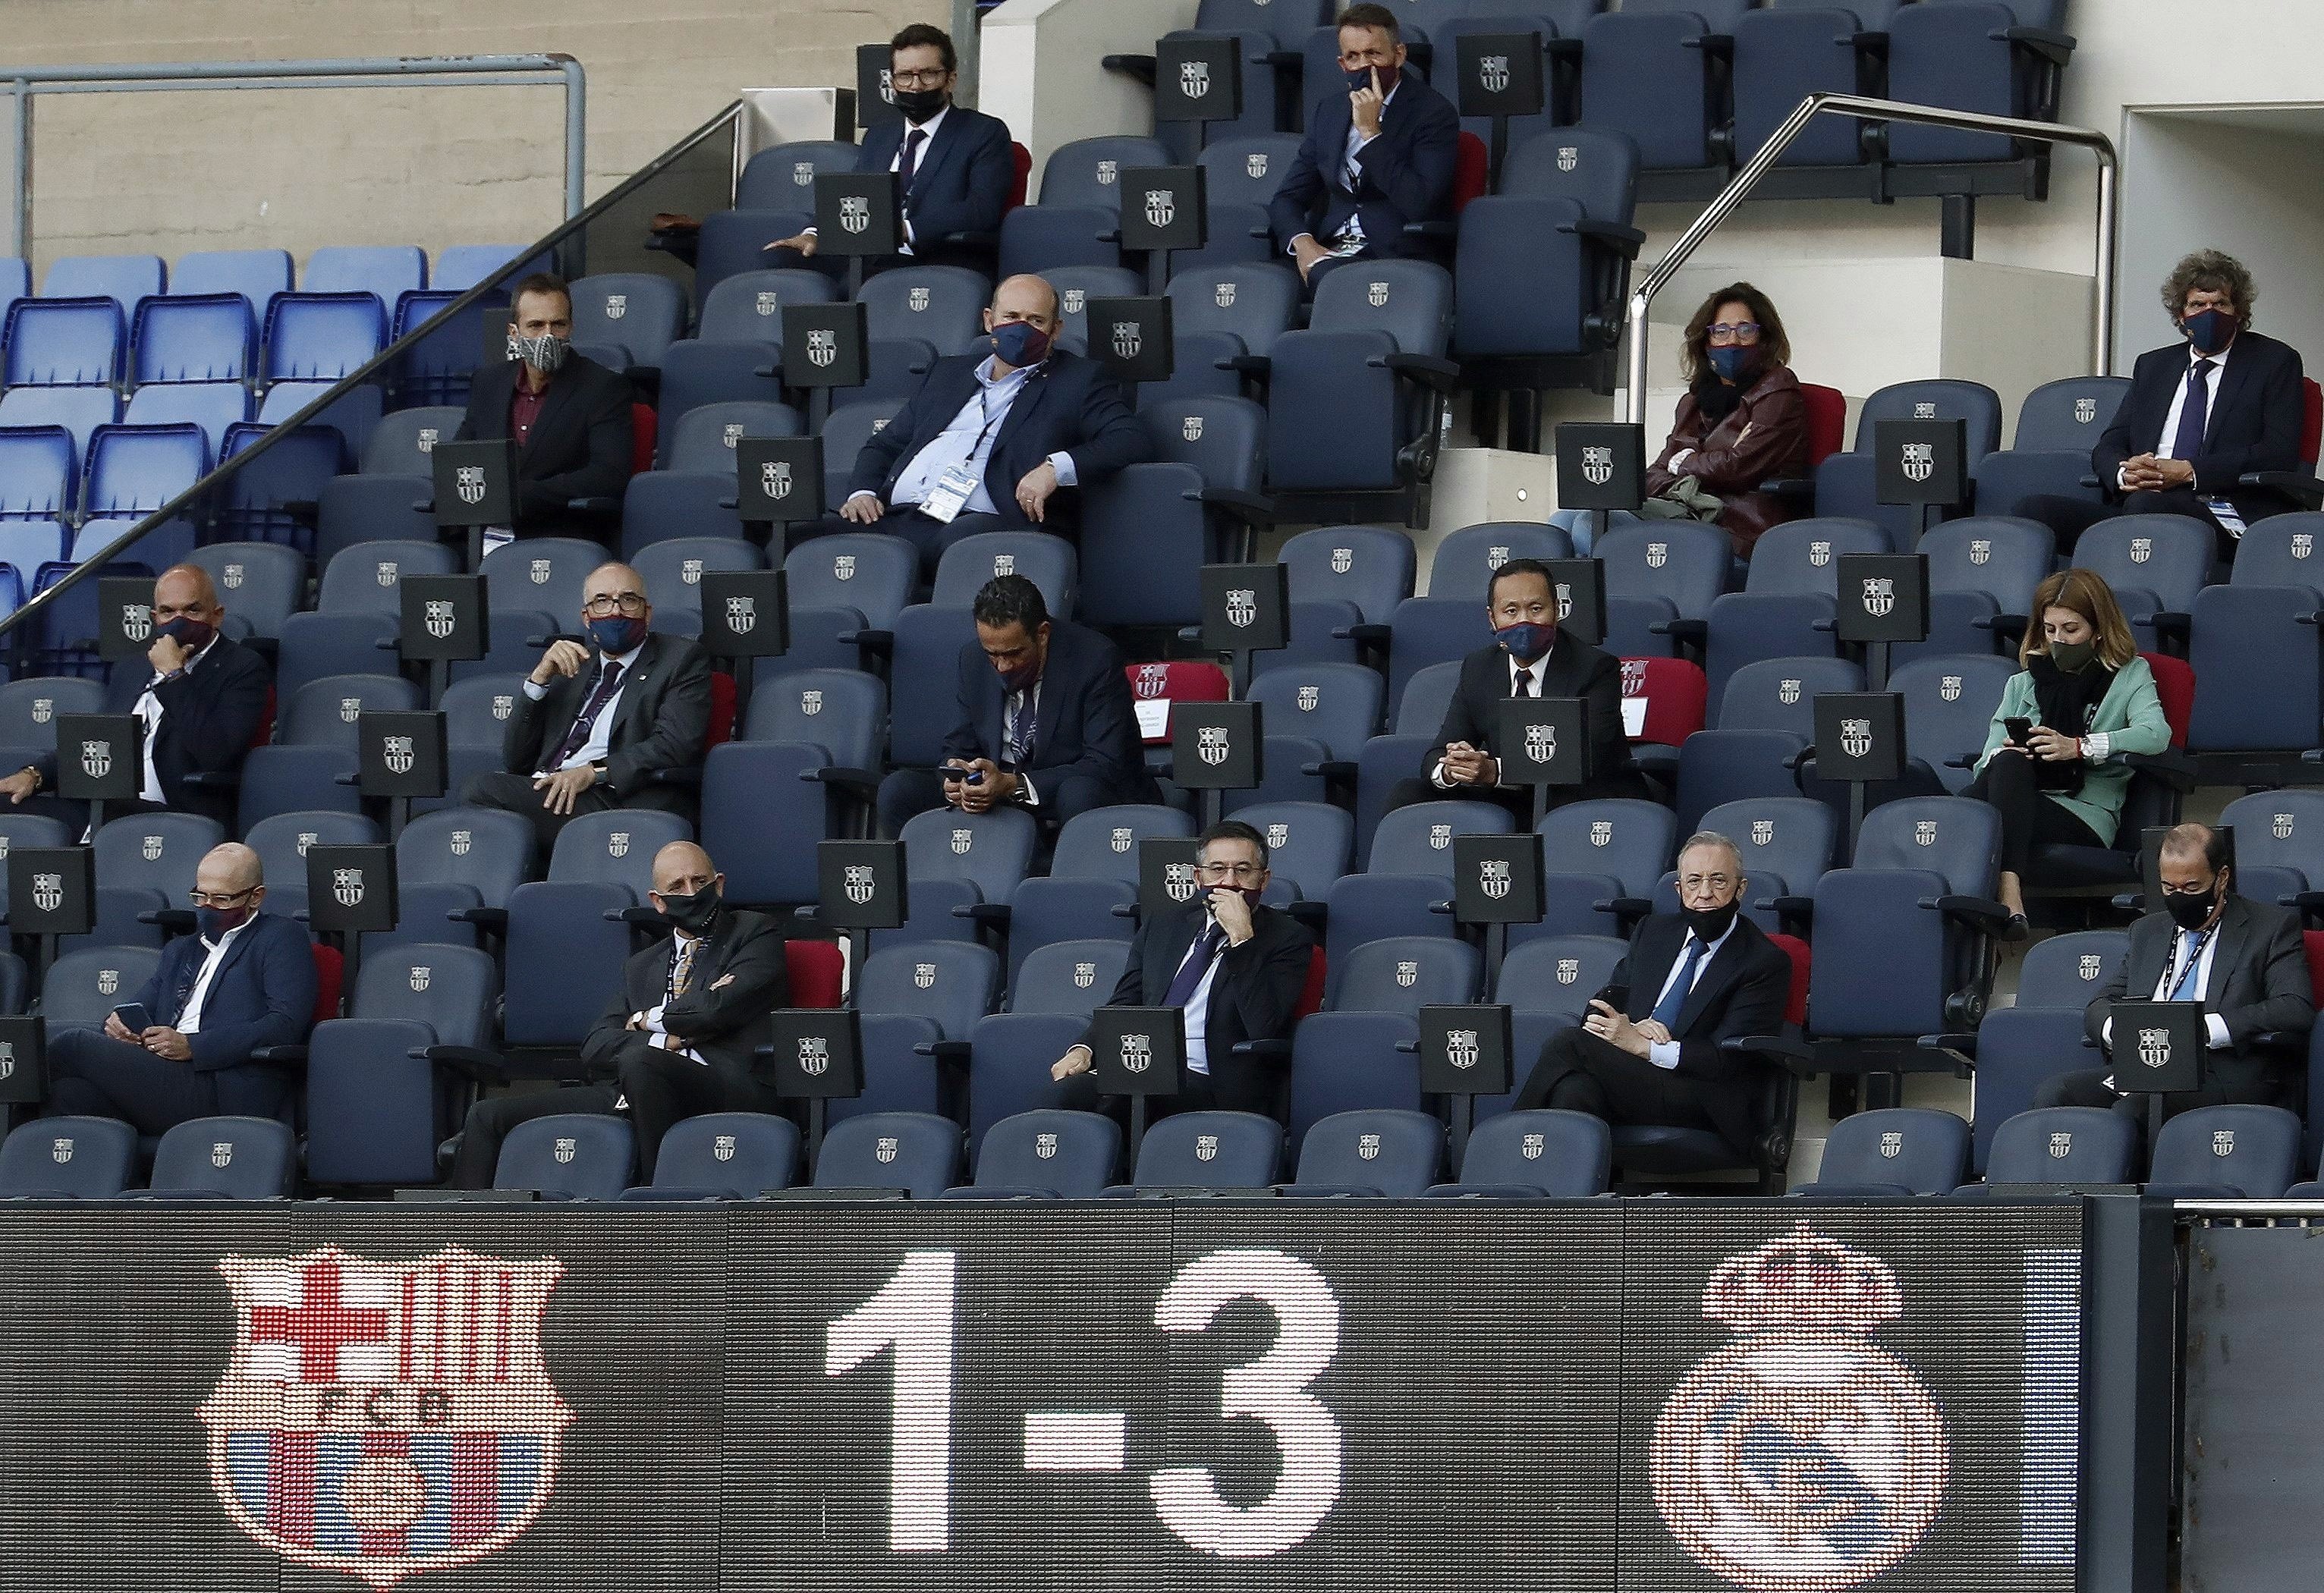 El futuro del Barça, en juego: dimisión de Bartomeu y la junta o referéndum